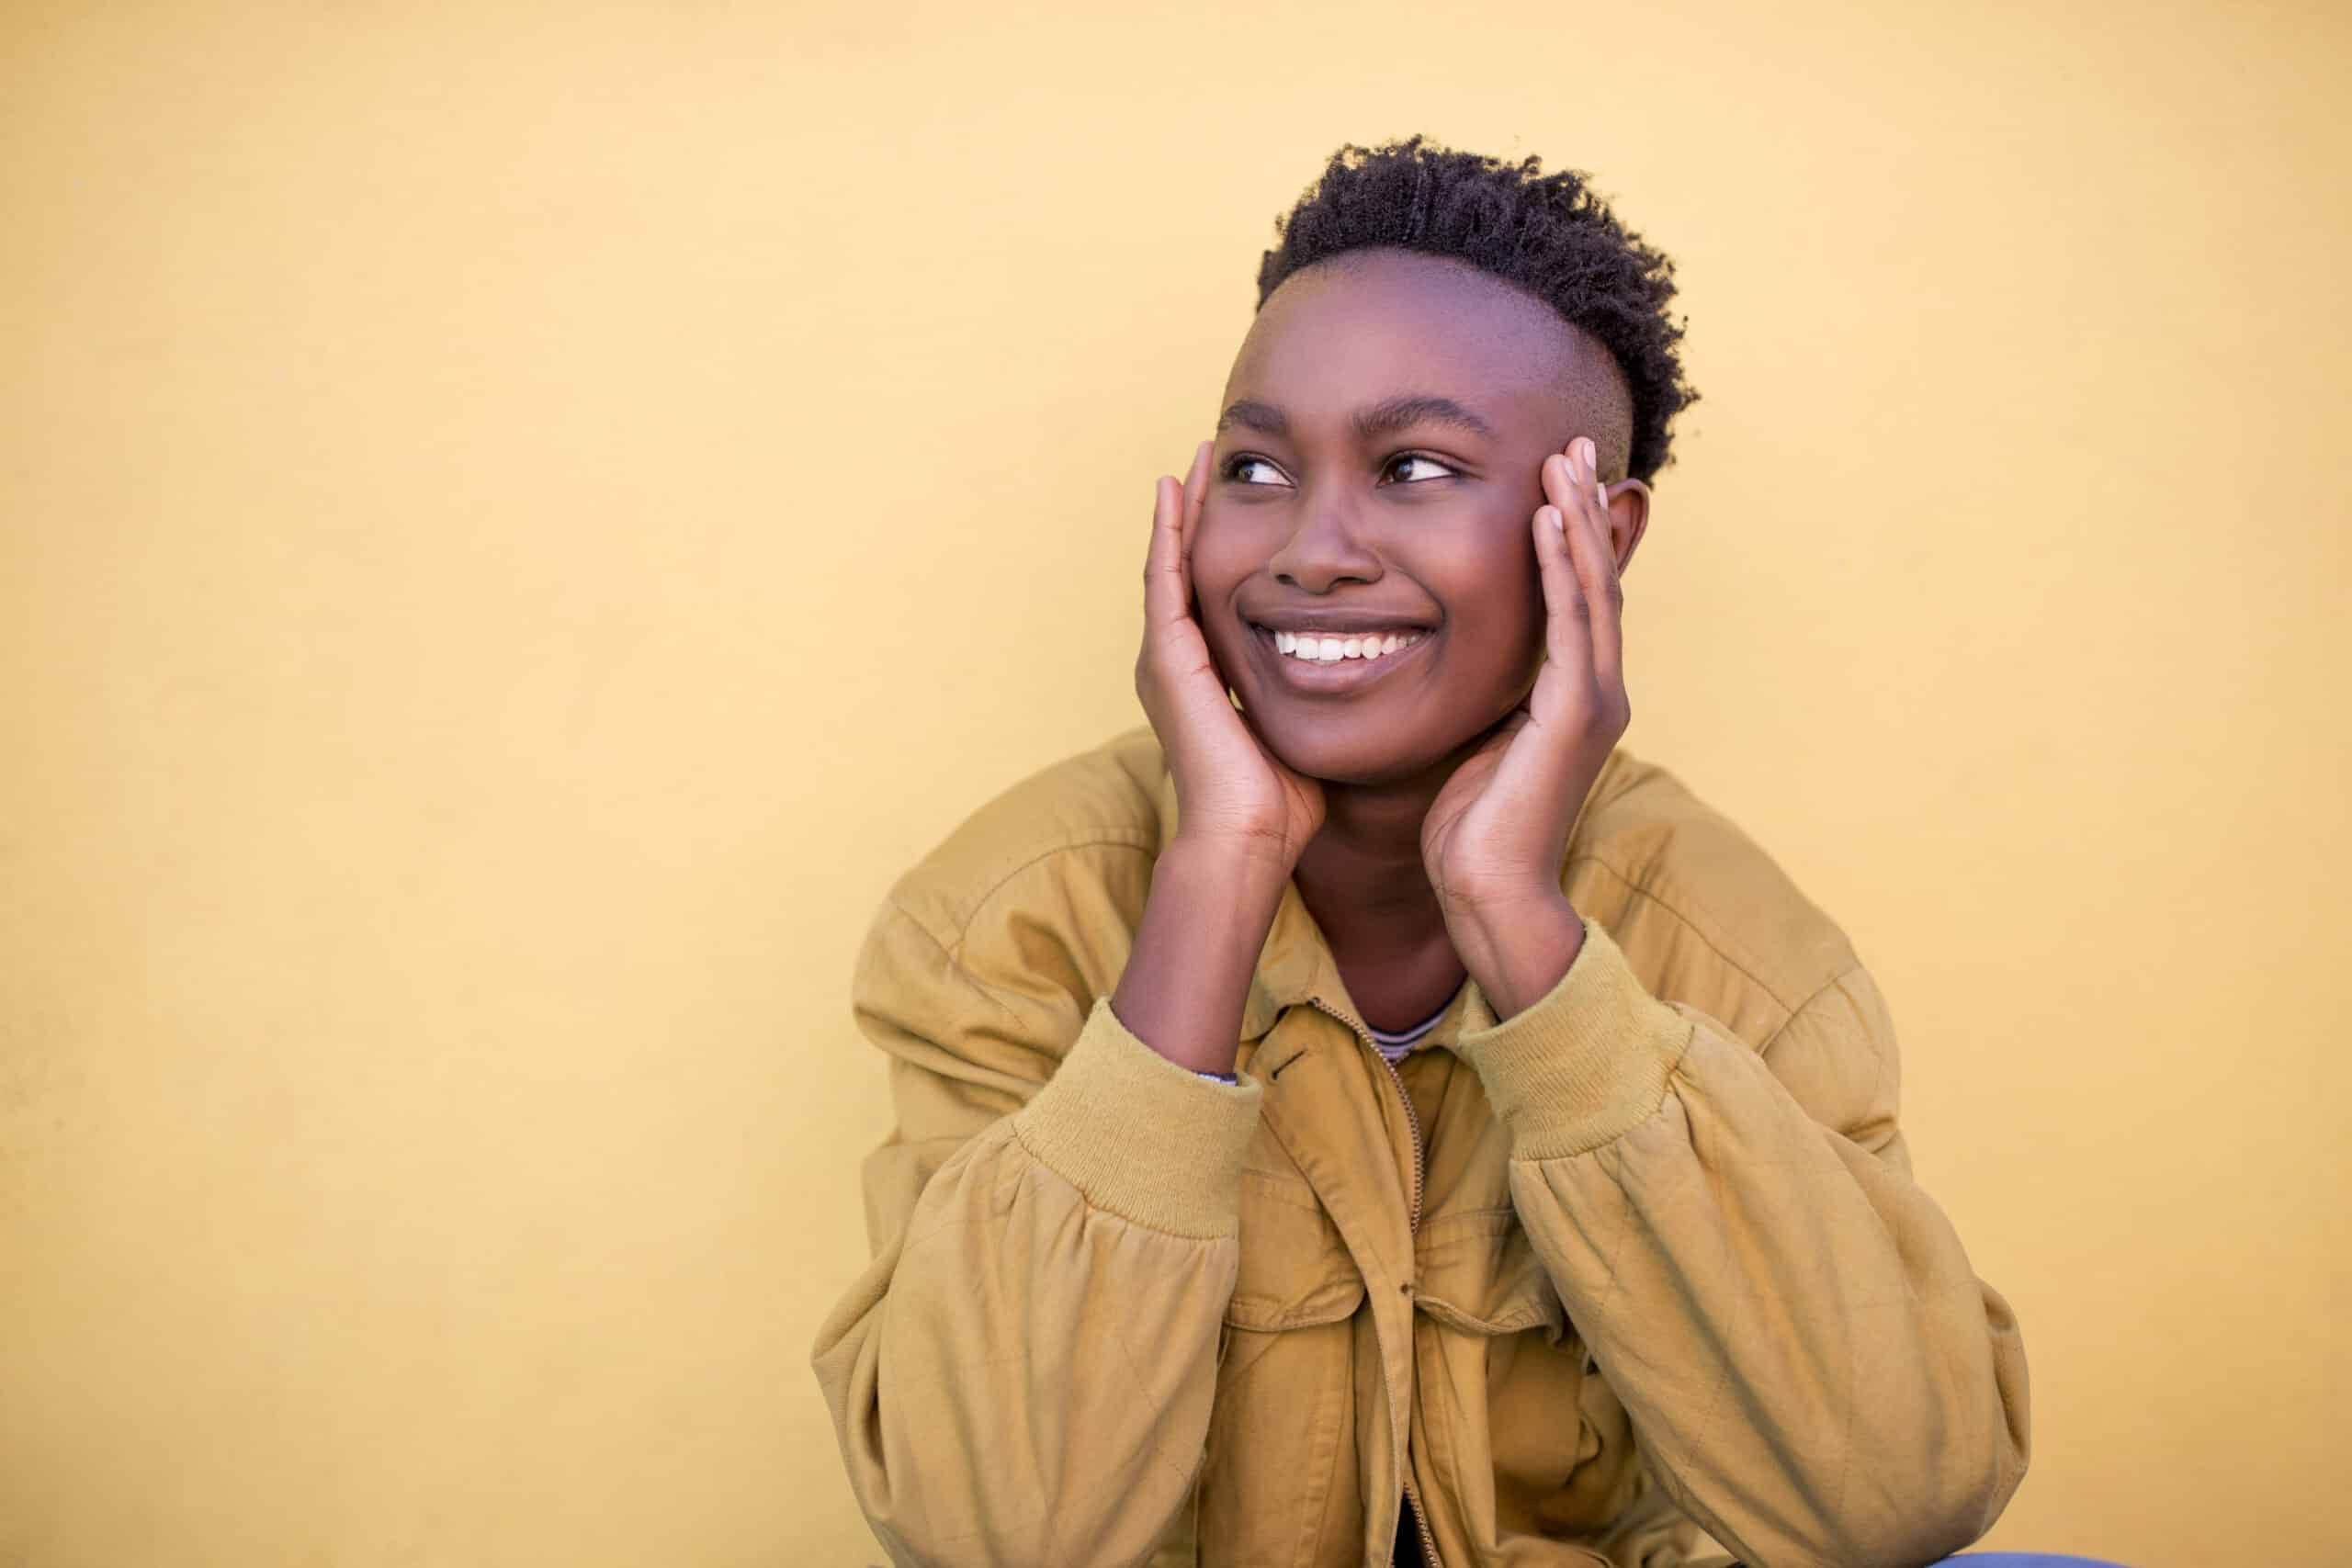 Eine fröhliche junge schwarze Frau mit Kurzhaarfrisur und hellbrauner Jacke, die lächelt, während sie nach oben schaut und ihre Wangen auf ihren Händen abstützt, vor einem sanften gelben Hintergrund. © Fotografie Tomas Rodriguez